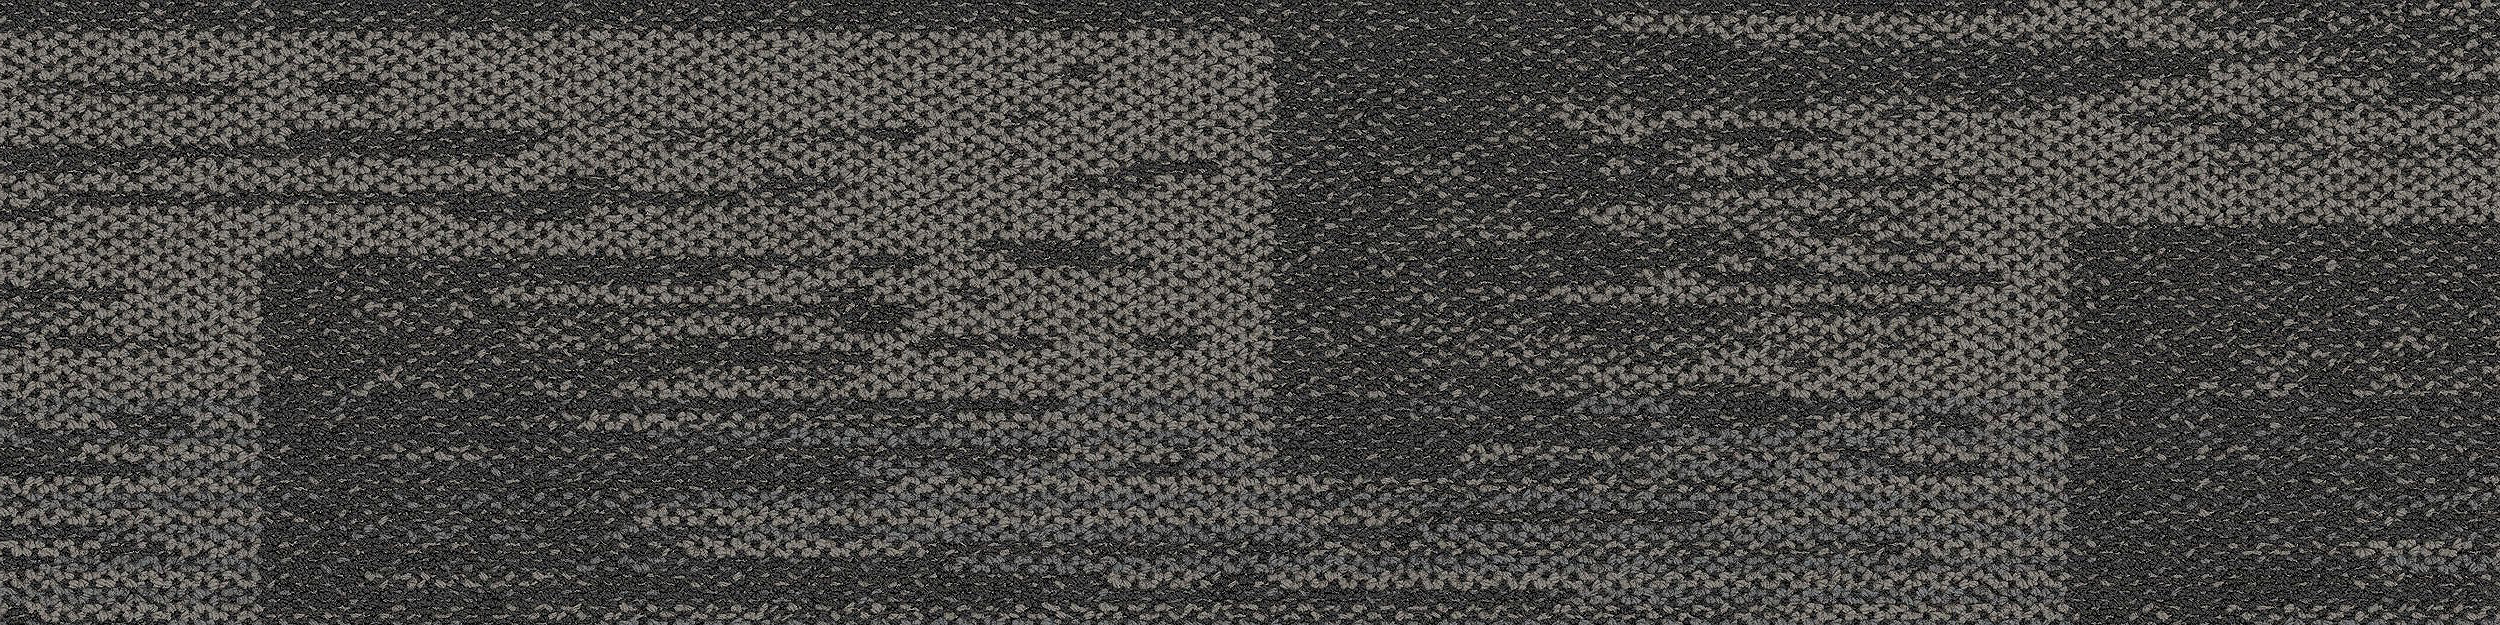 AE311 Carpet Tile In Smoke image number 14